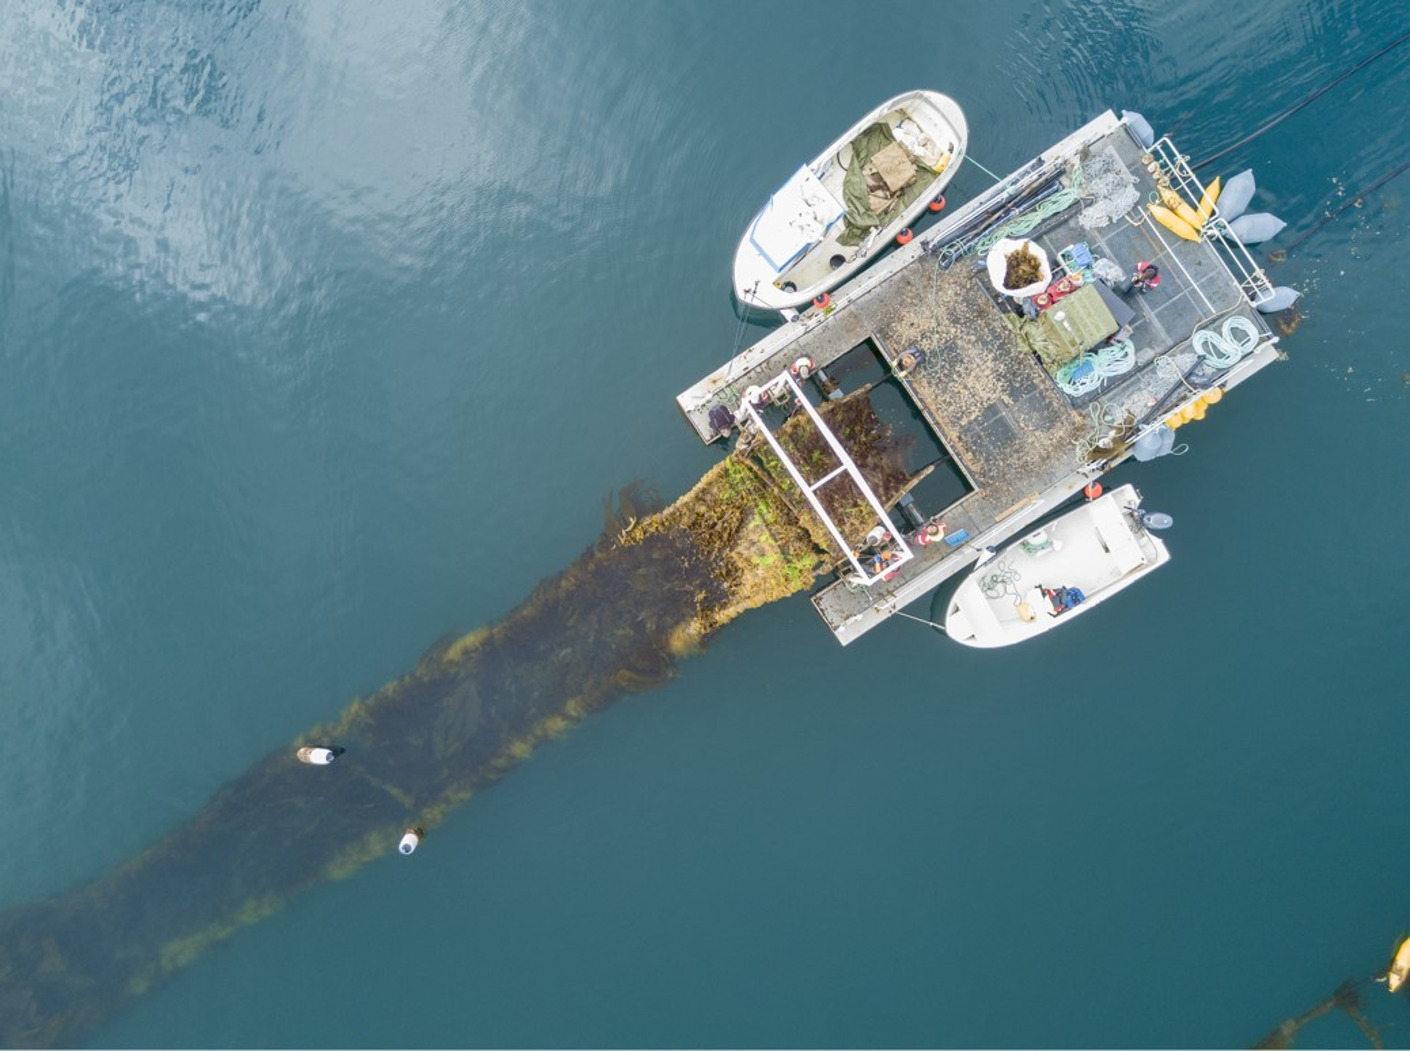 Wereldprimeur: Norther faciliteert eerste demonstratie met zeewierteelt in een offshore windpark